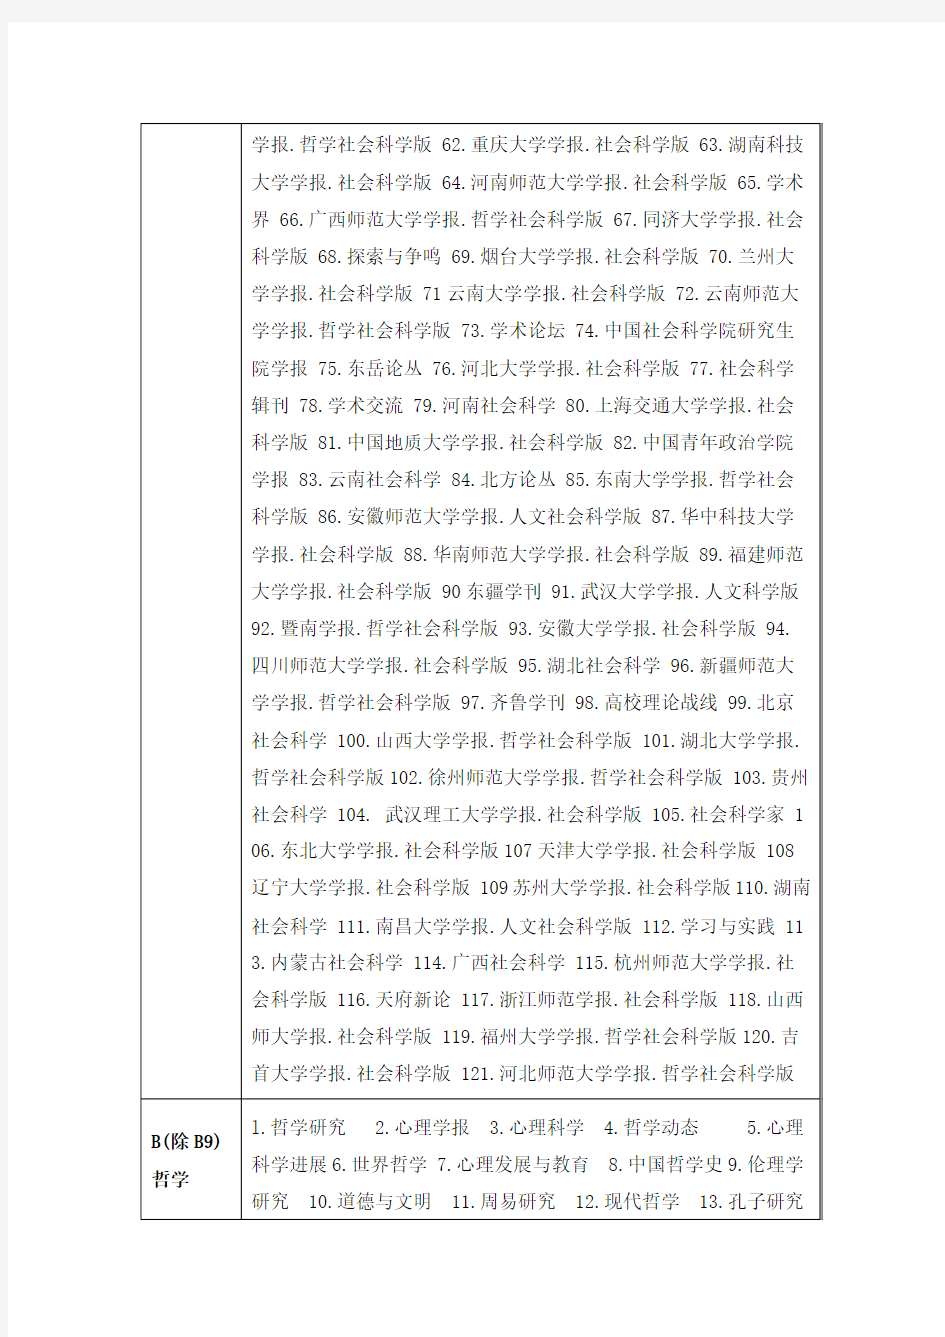 2012中文核心期刊目录(第六版)